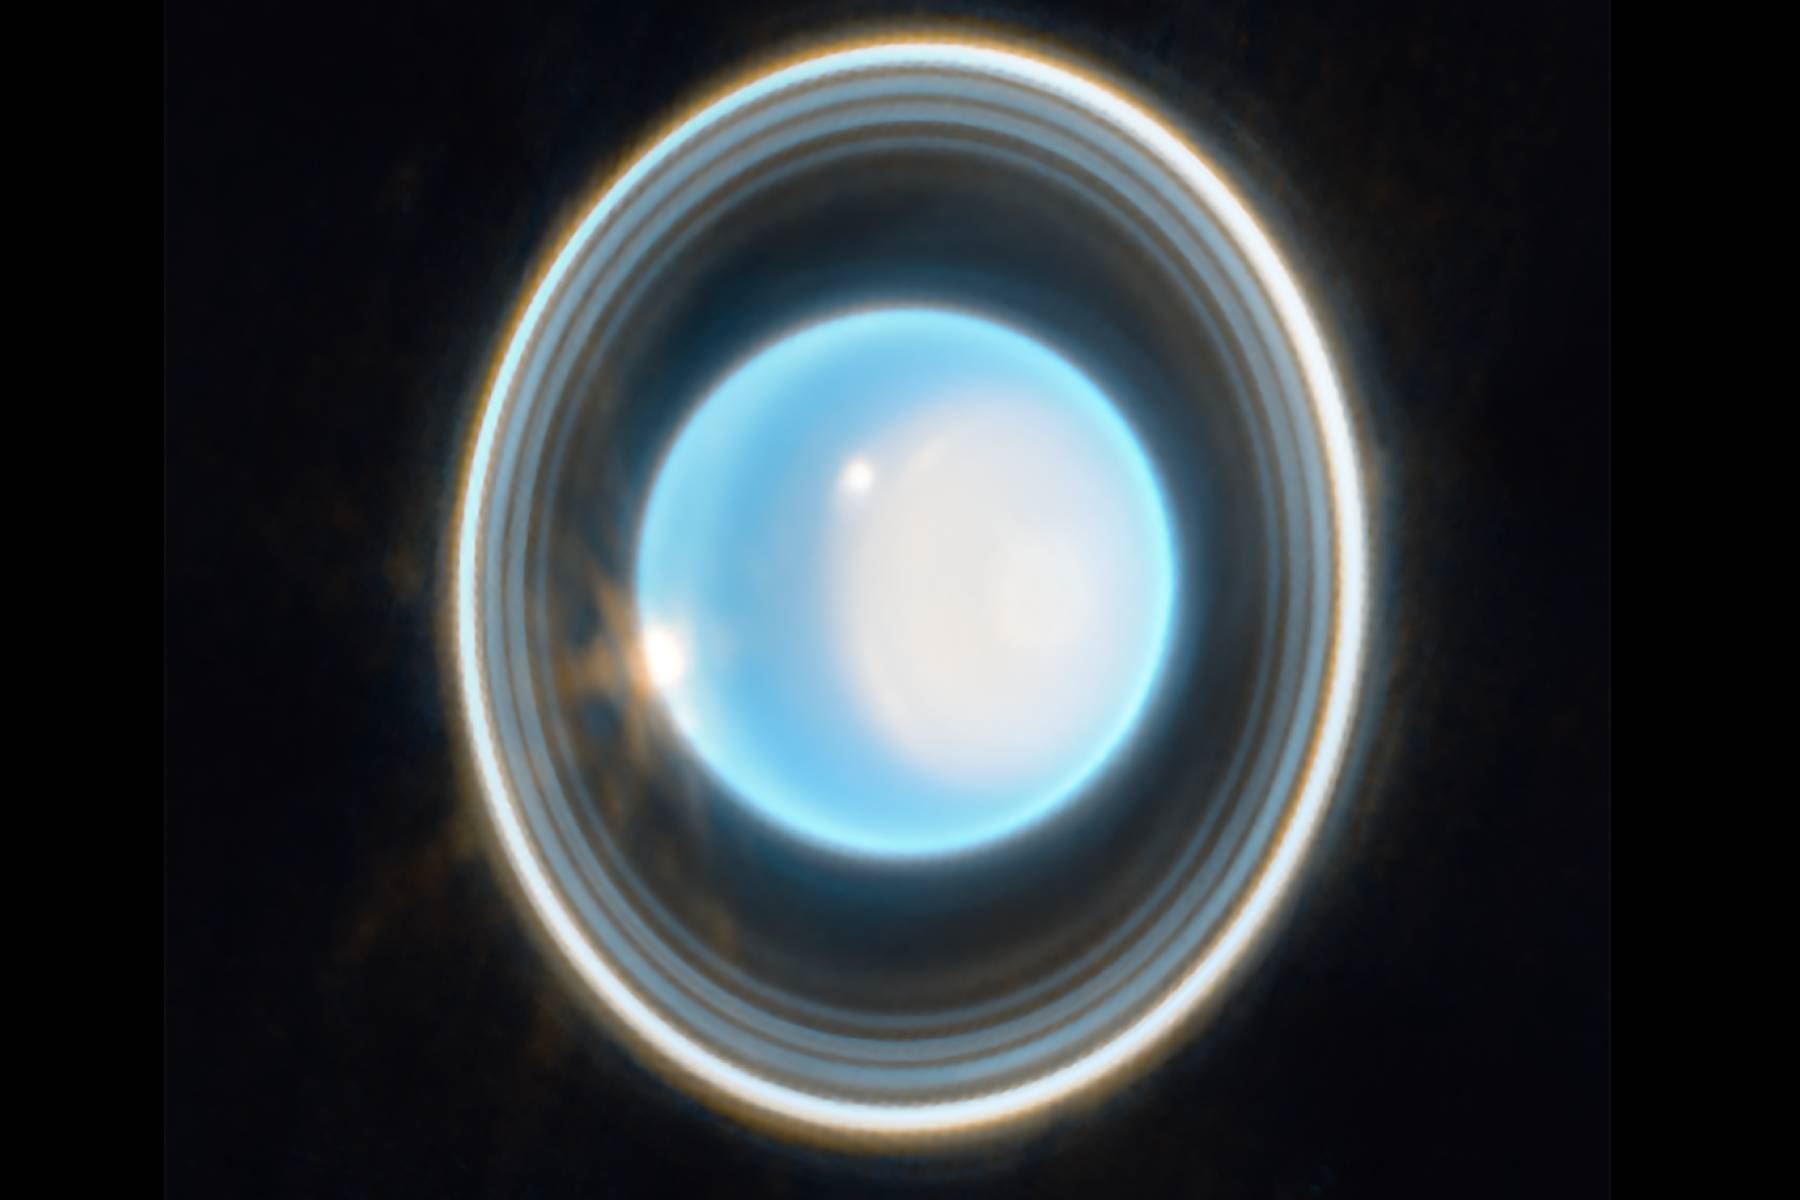 Urano tiene 13 anillos conocidos y 11 de ellos son visibles en esta imagen inédita del Webb. Foto: NASA